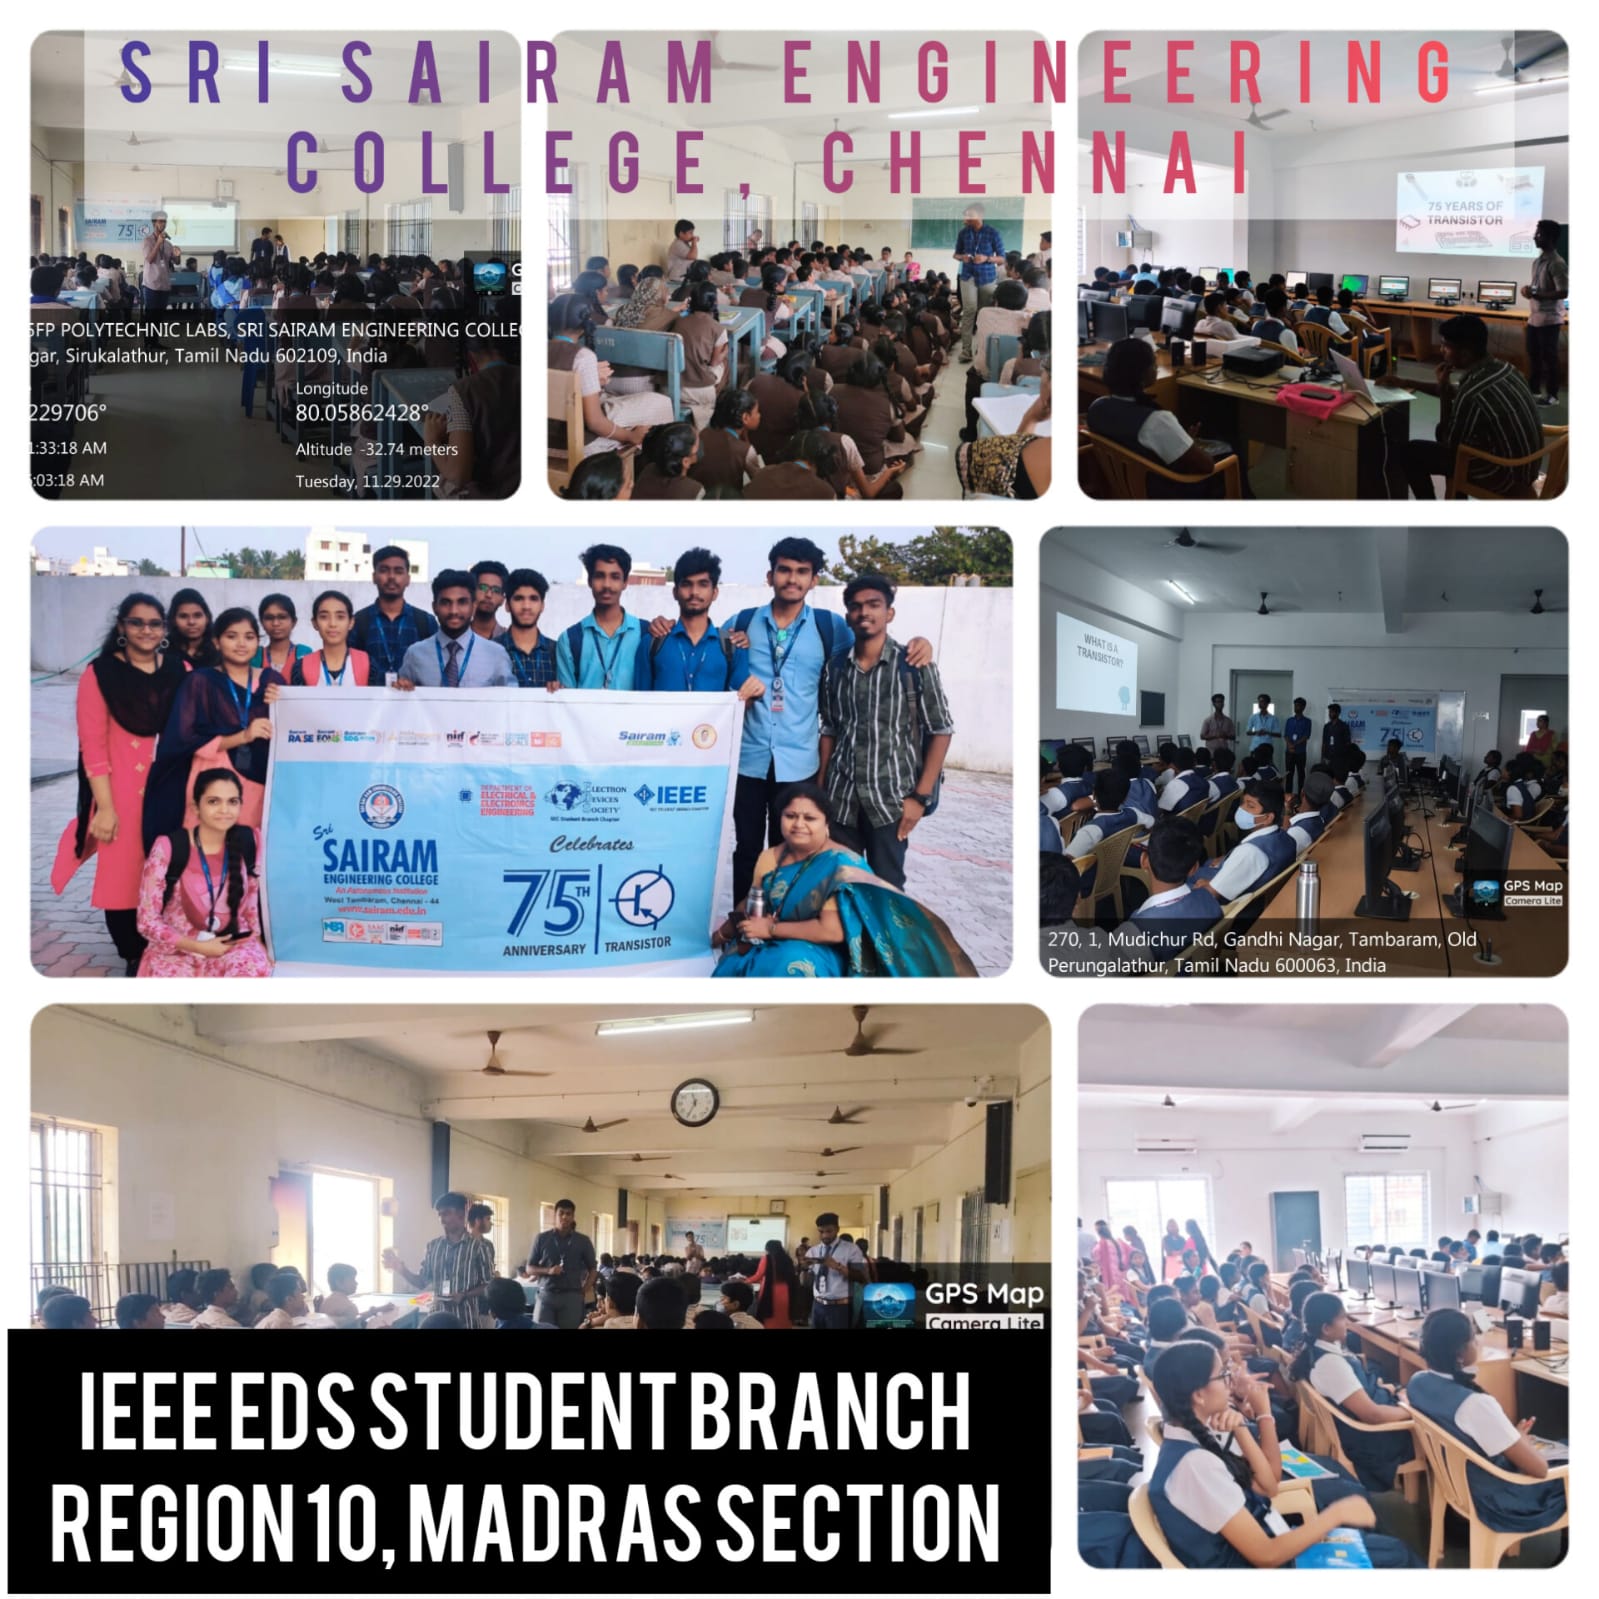 Sri Sairam Engineering College Chennai India